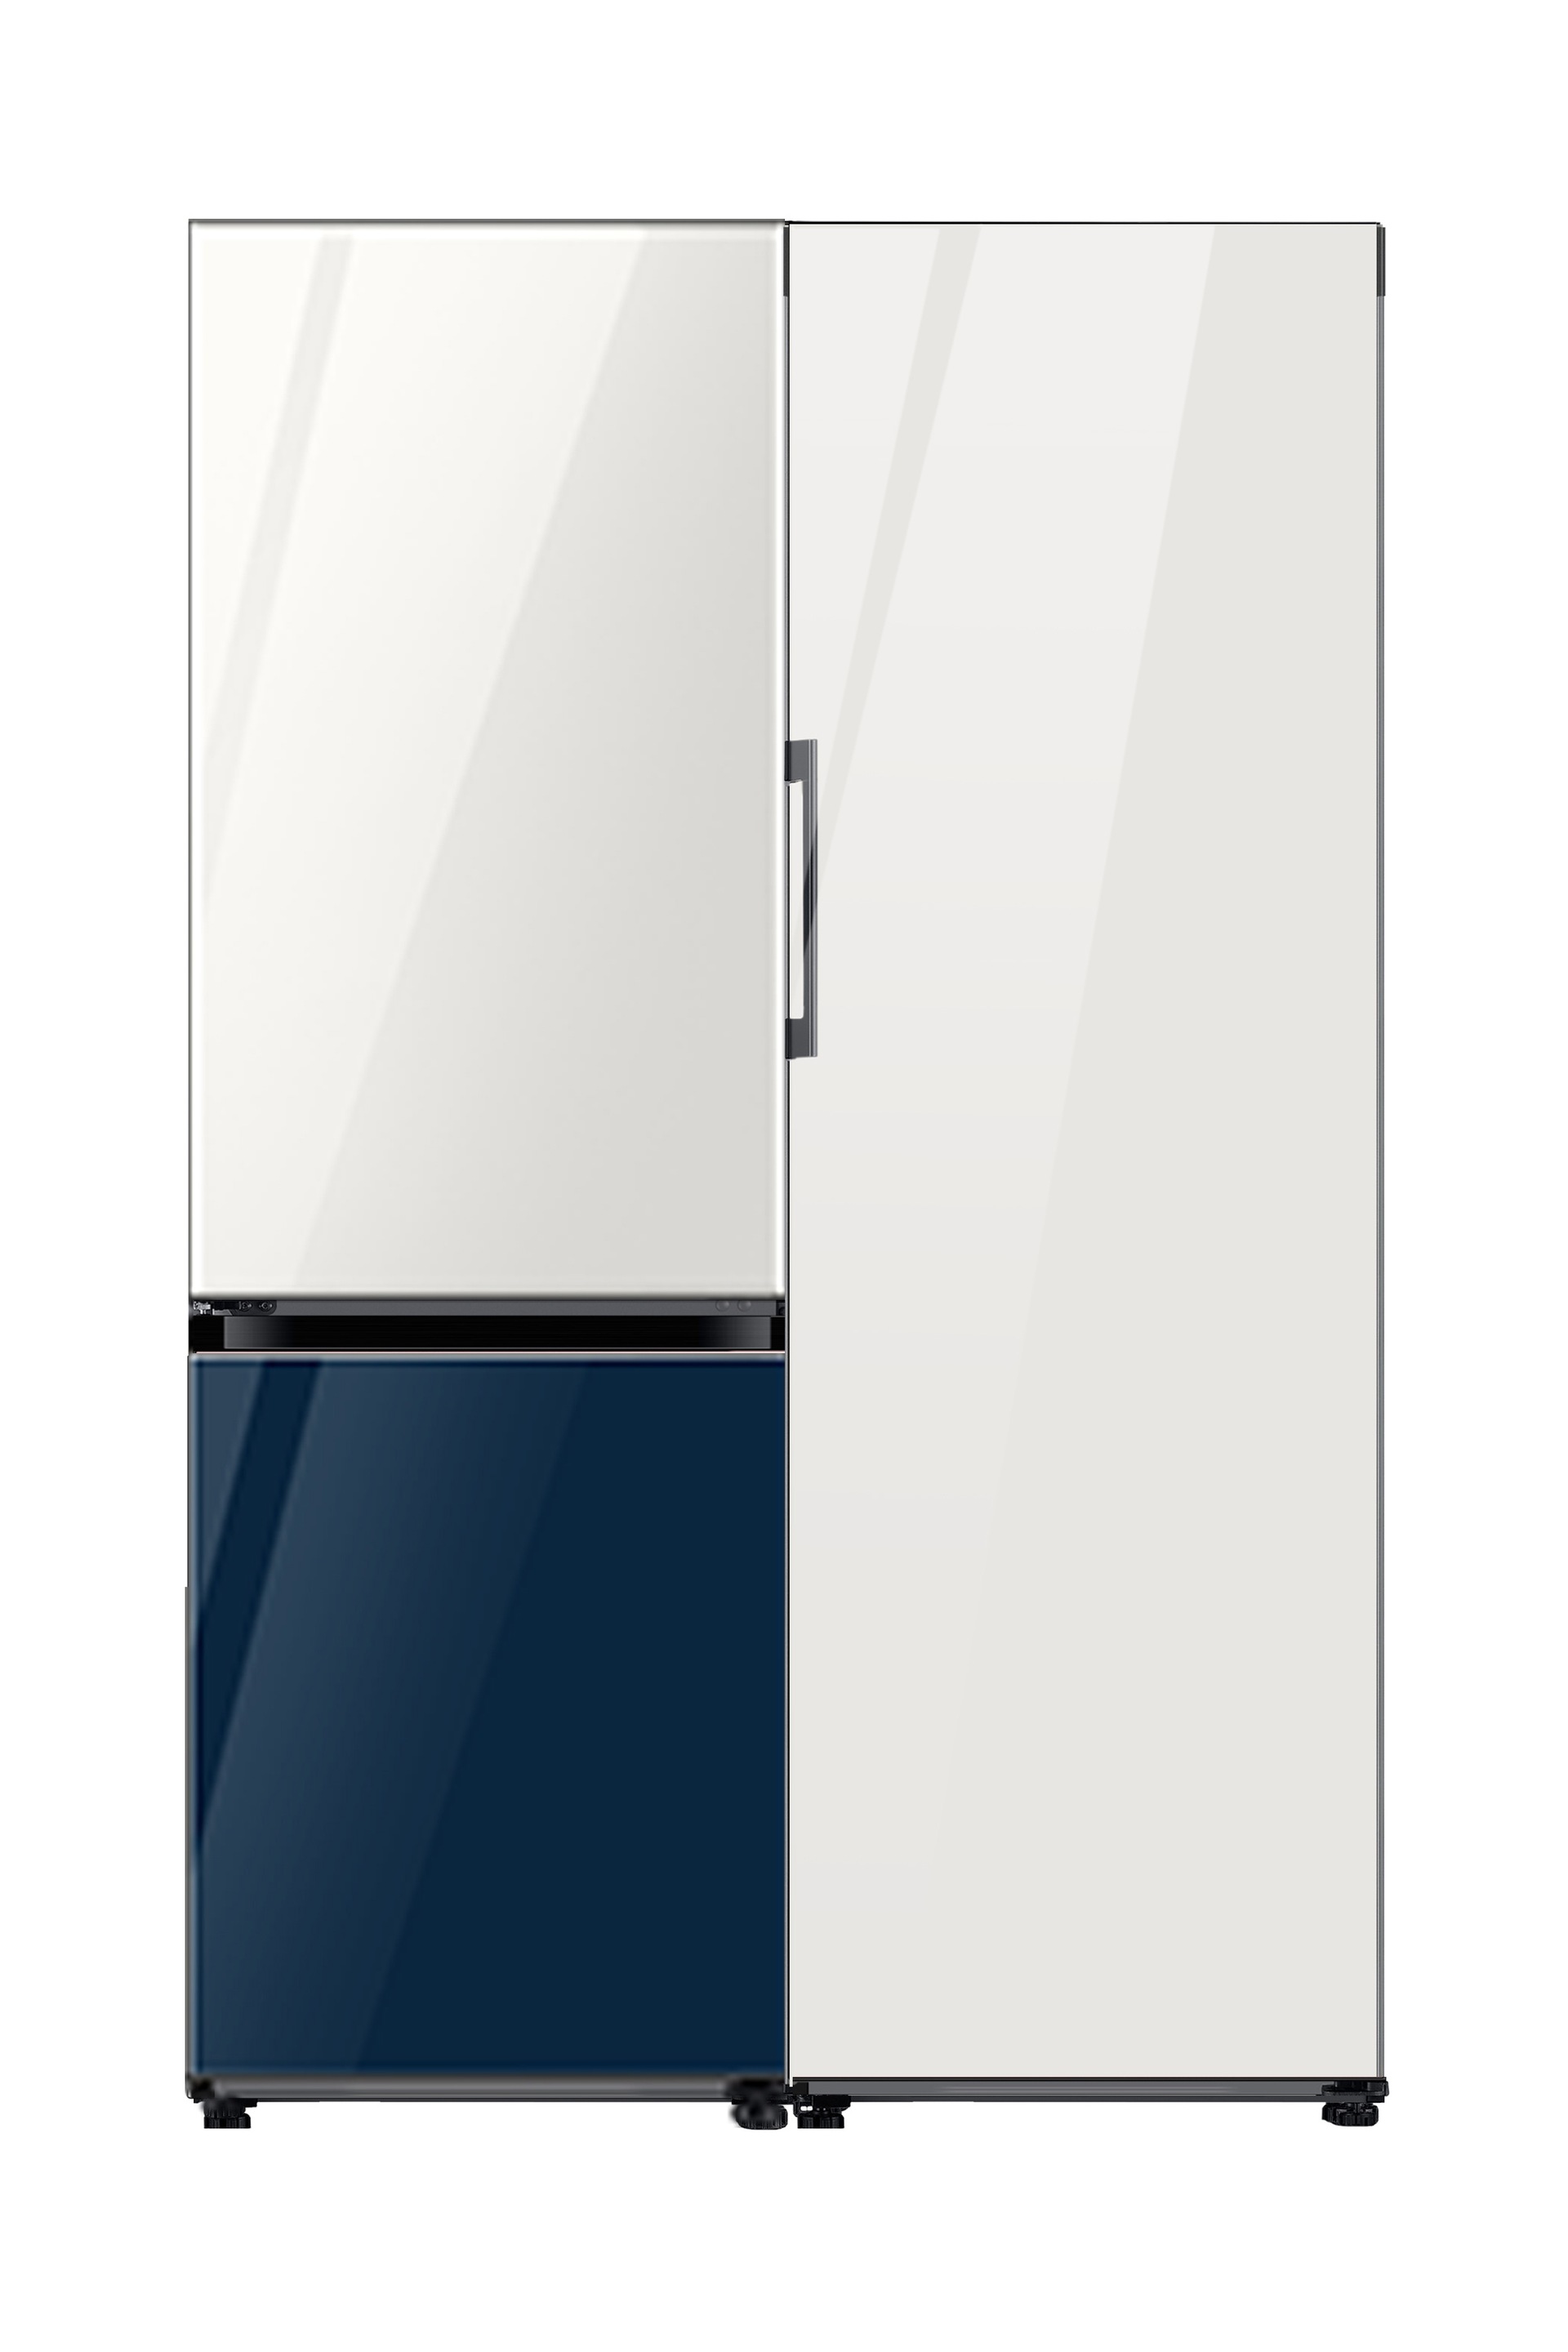 BESPOKE Refrigerator 2 Door (Top Glam White Bottom Glam Navy) + 1 Door (Glam White) Combination